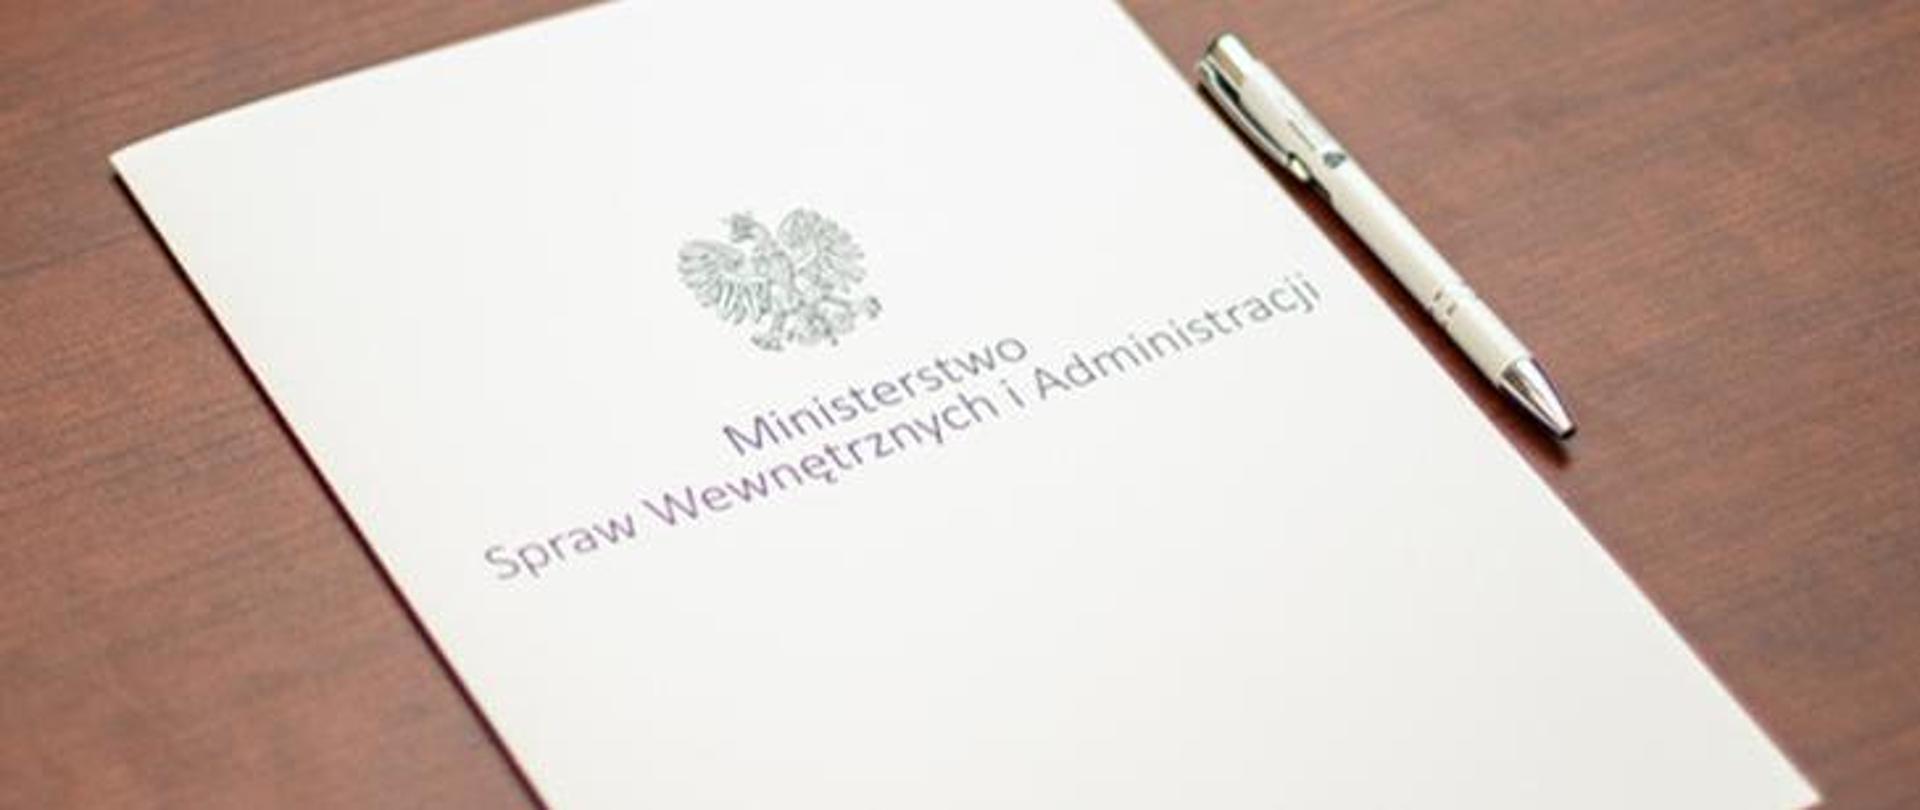 Widok leżącej na biurku teczki z napisem Ministerstwo Spraw Wewnętrznych i Administracji i obok długopis.